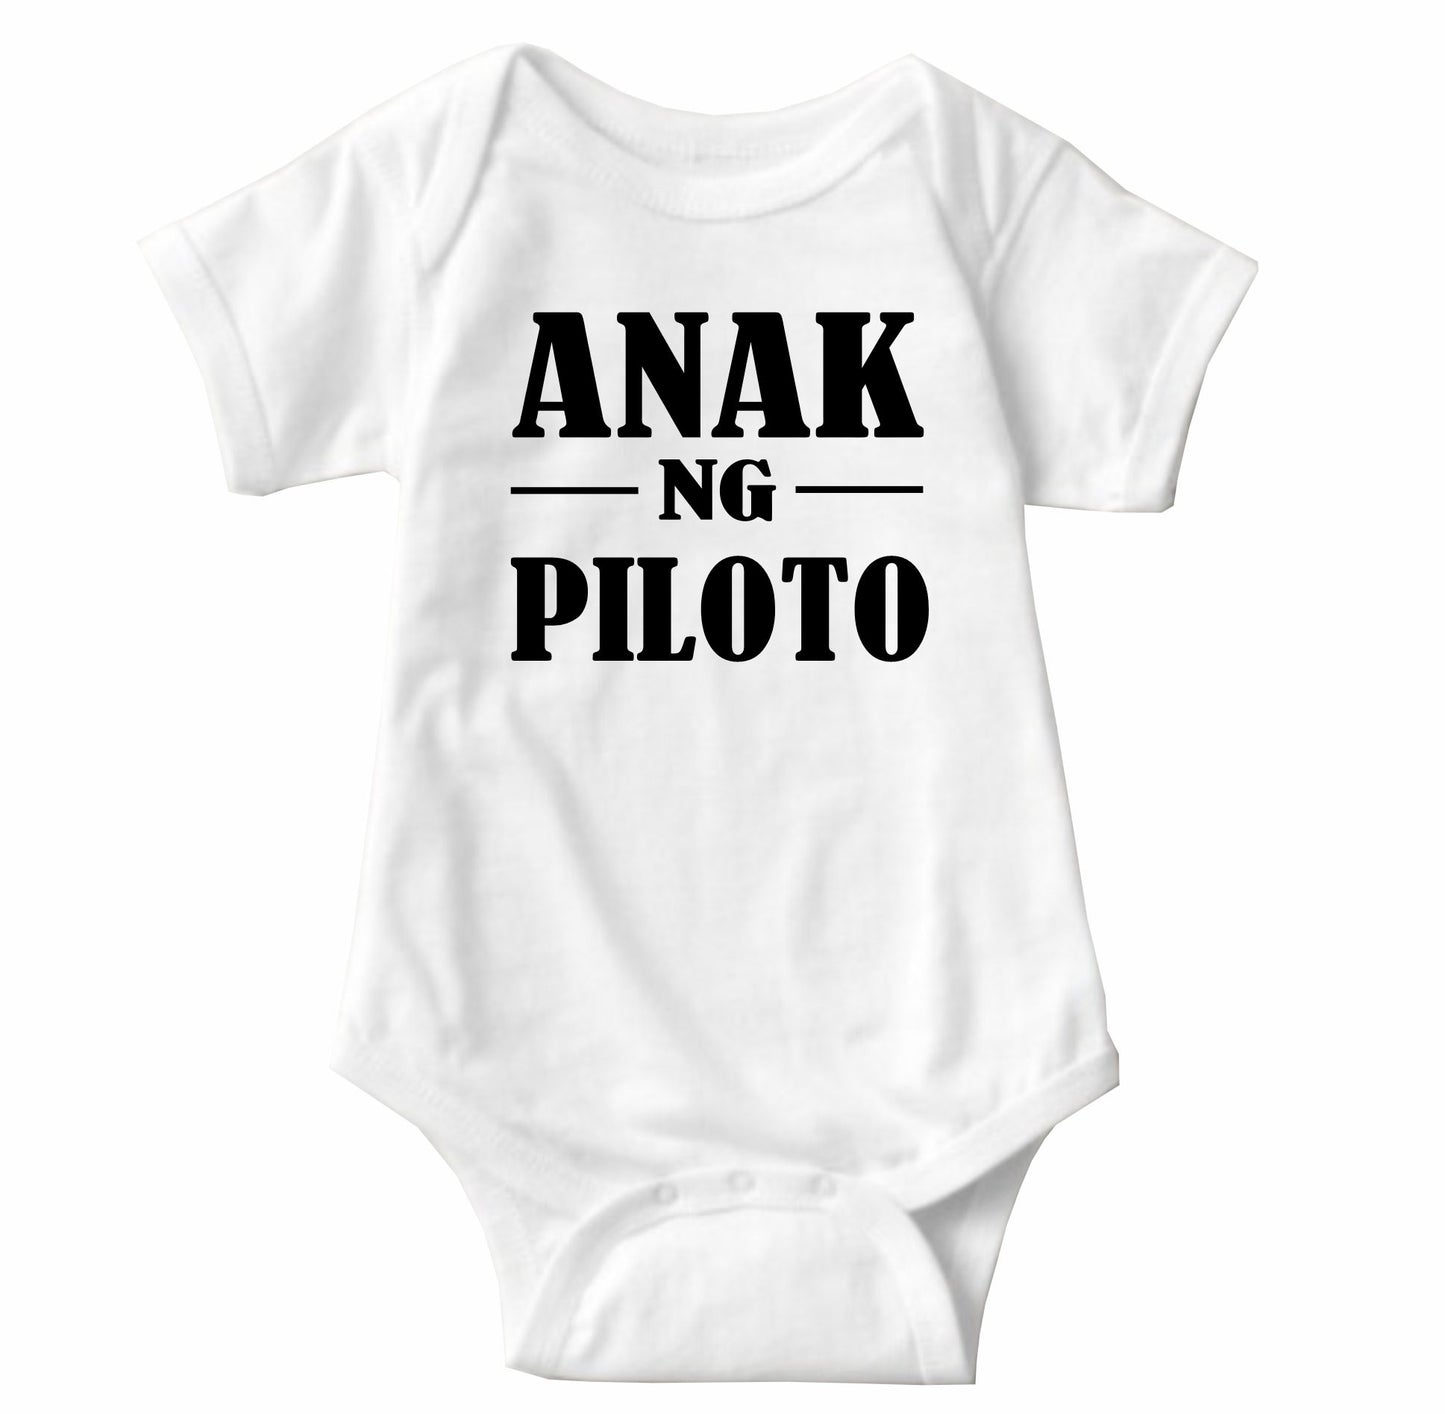 Baby Statement Onesies - Anak ng Piloto